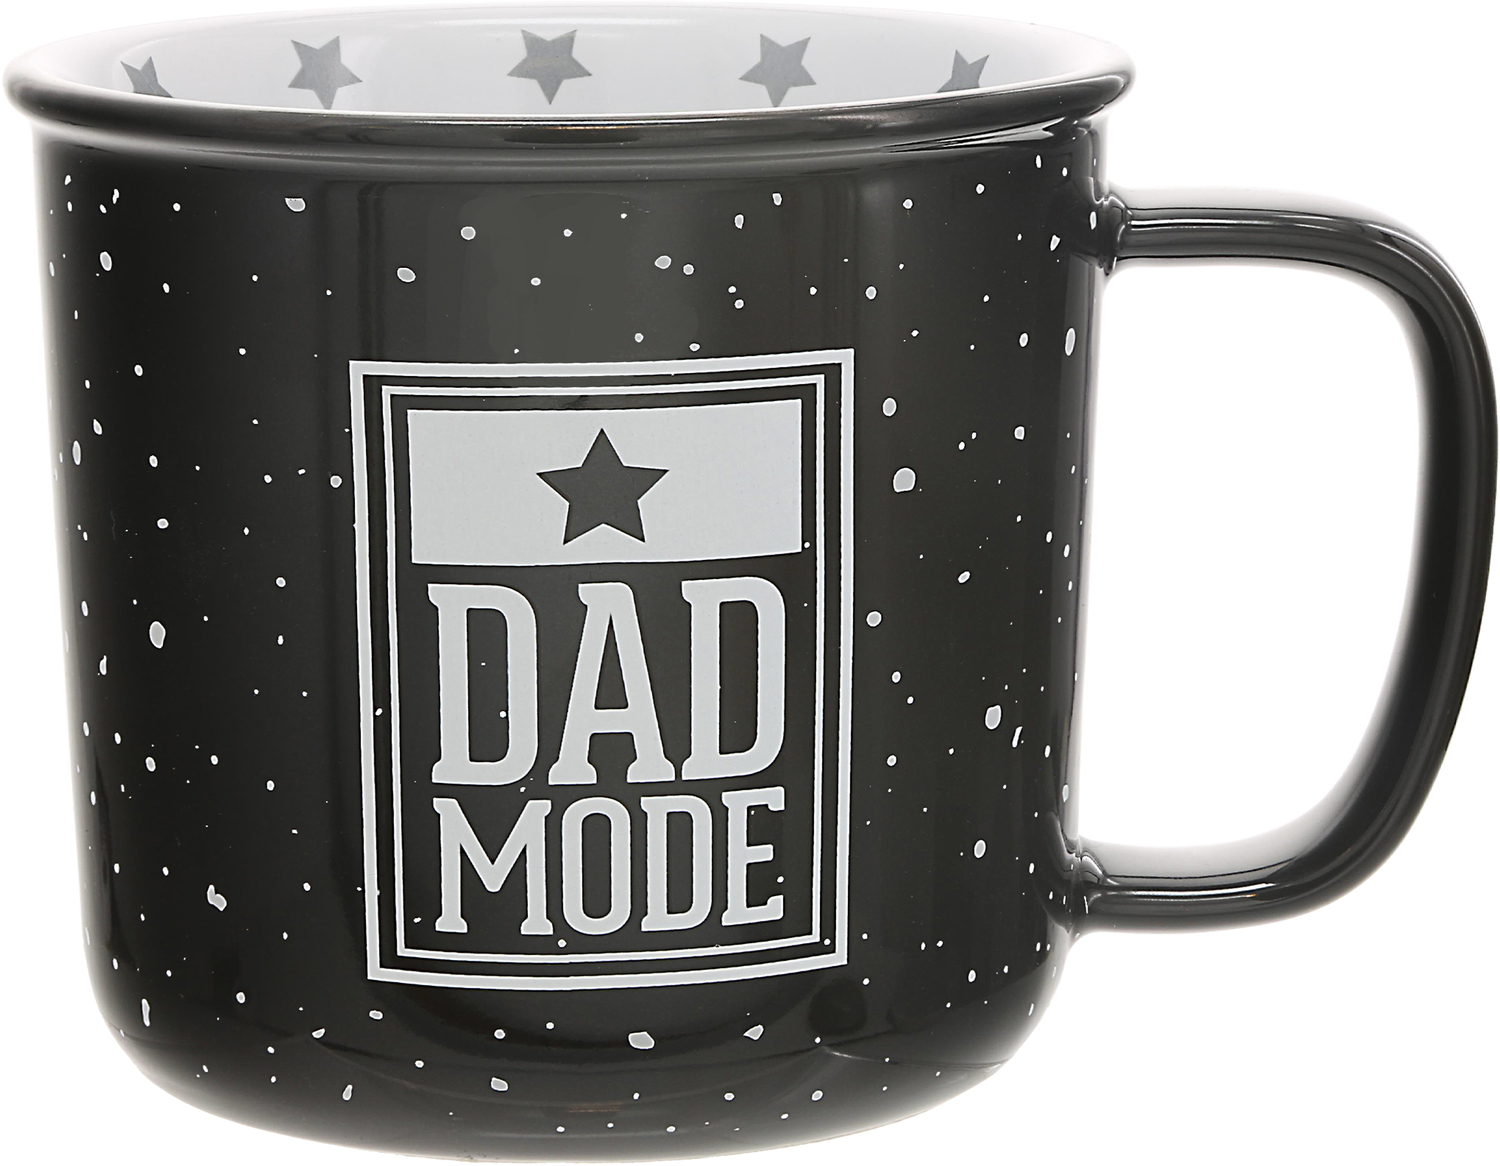 Dad Mode by We People - Dad Mode - 18 oz Mug